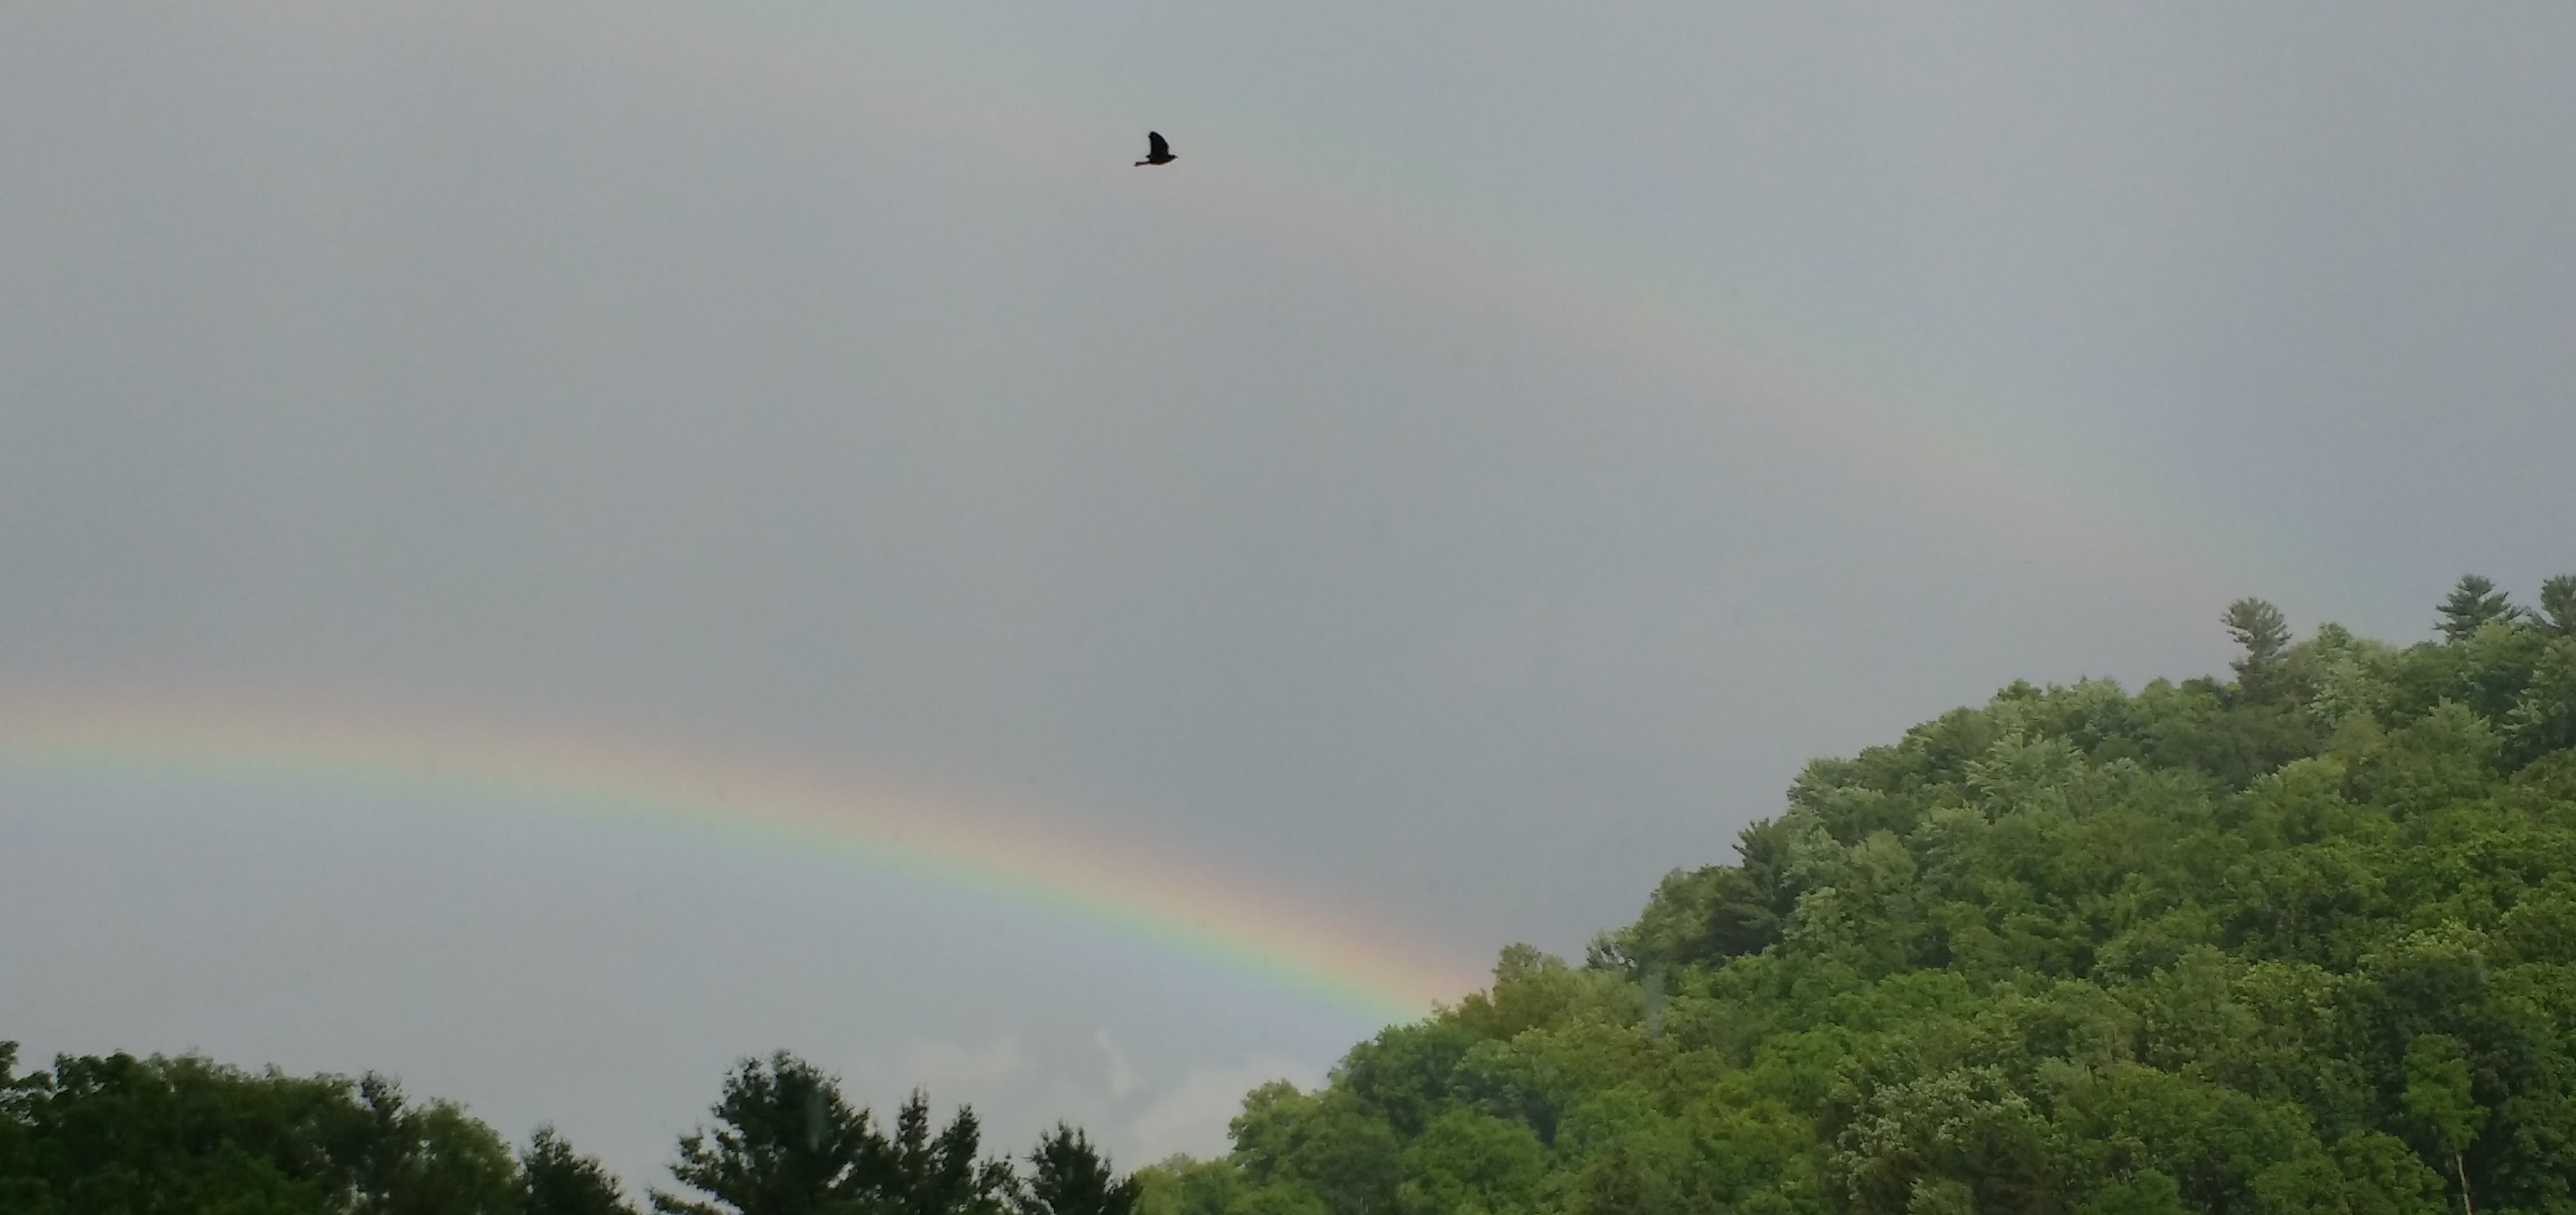 Hill, rainbow, eagle